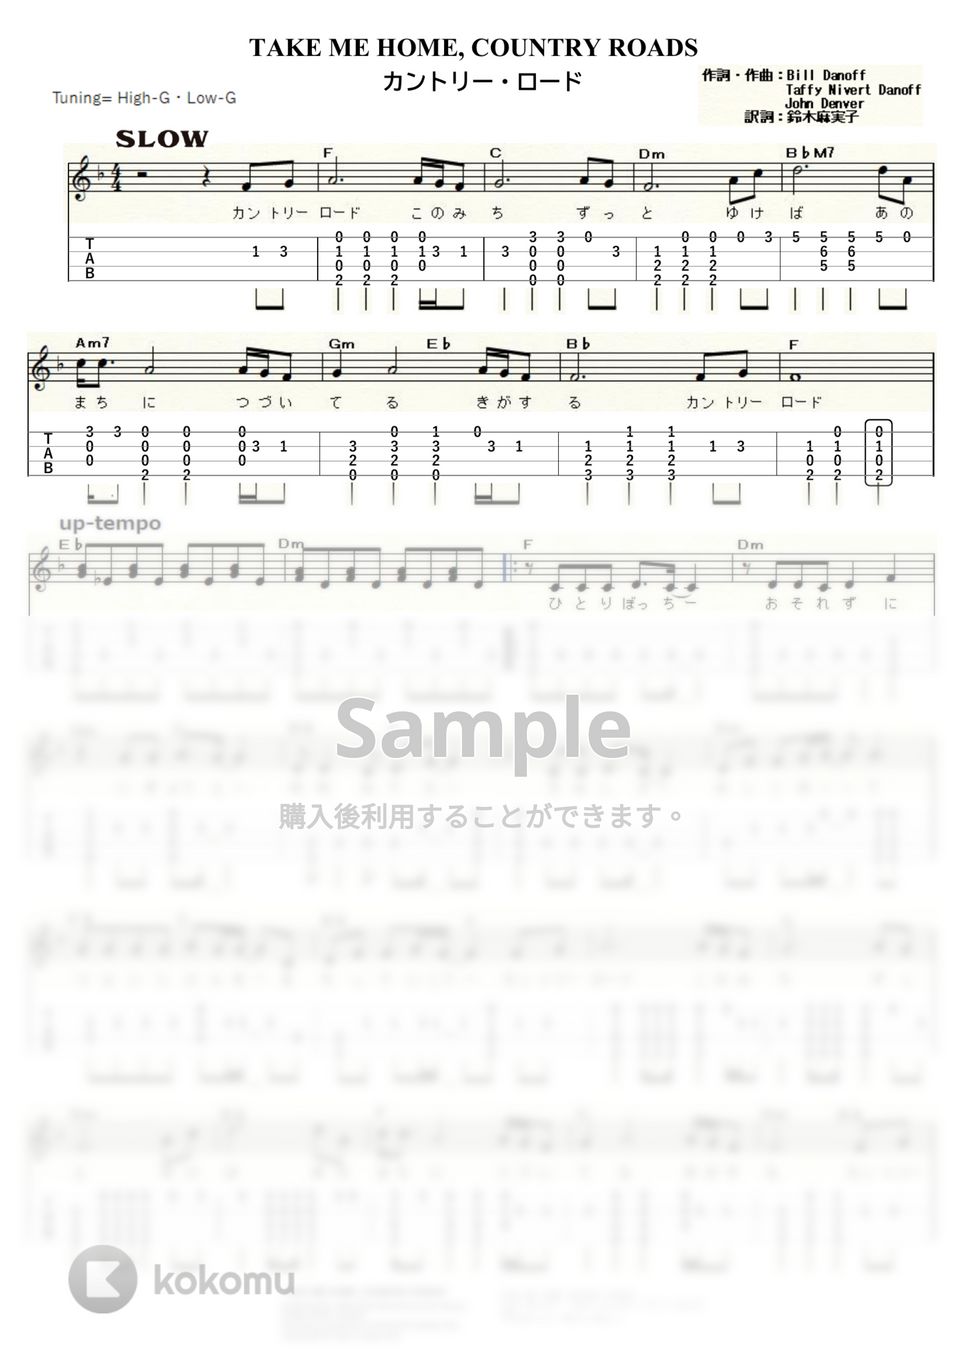 ジョン・デンバー - カントリー・ロード (ｳｸﾚﾚｿﾛ / High-G,Low-G / 中級) by ukulelepapa